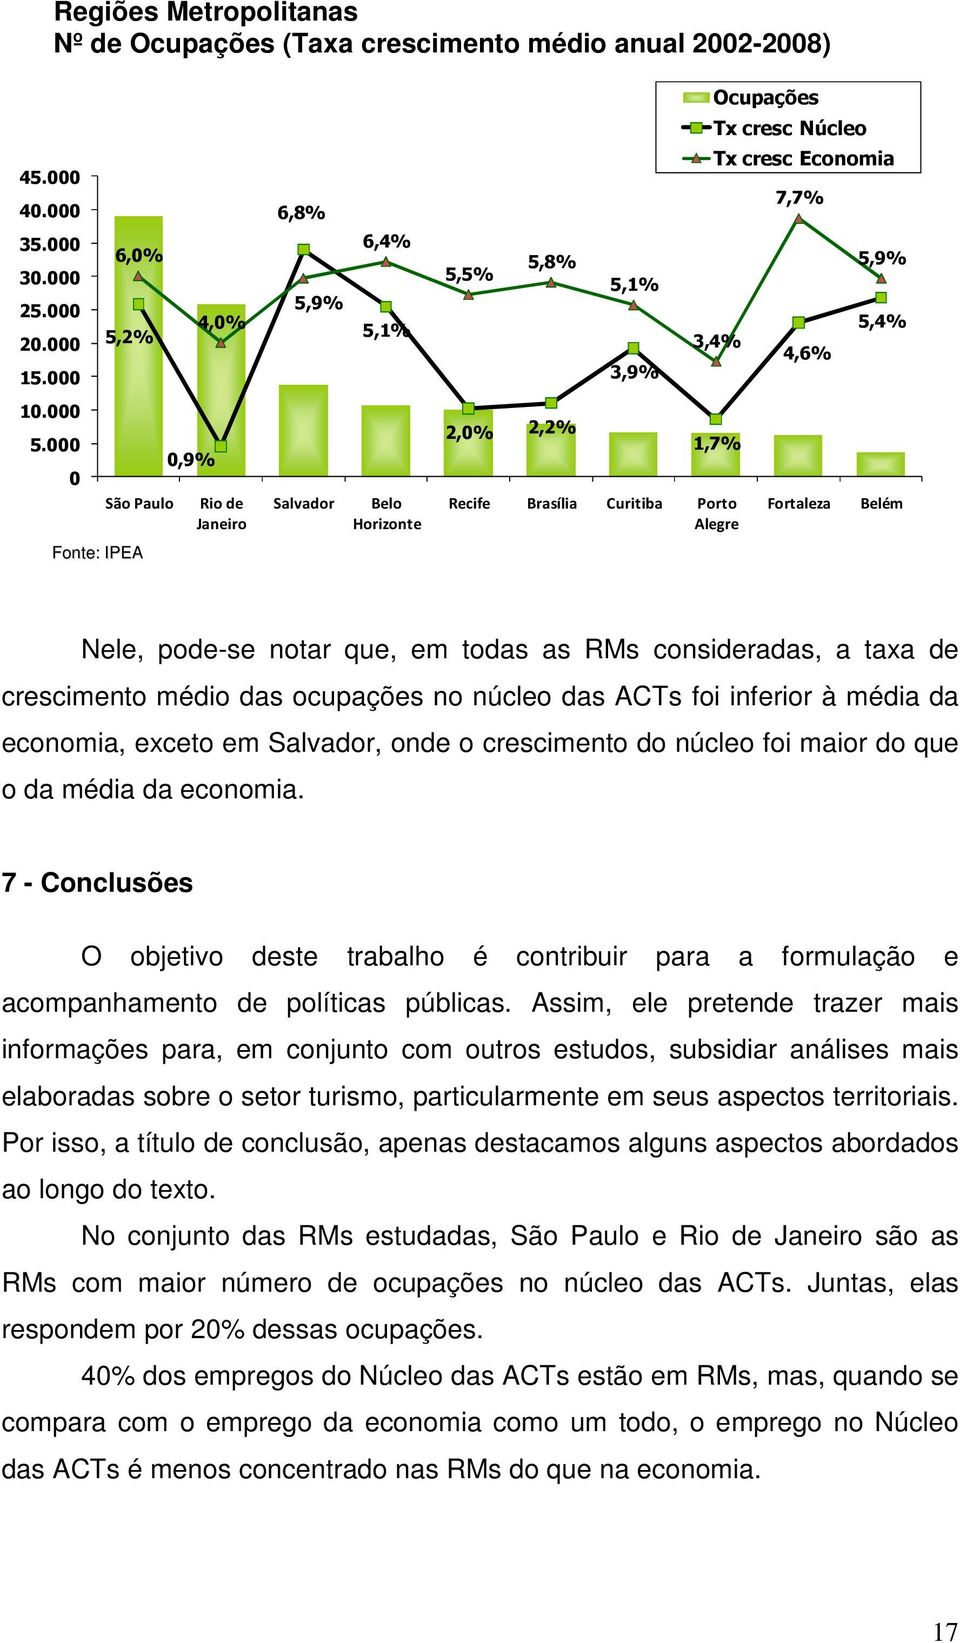 cresc Núcleo Tx cresc Economia 7,7% 4,6% Fortaleza 5,9% 5,4% Belém Nele, pode-se notar que, em todas as RMs consideradas, a taxa de crescimento médio das ocupações no núcleo das ACTs foi inferior à